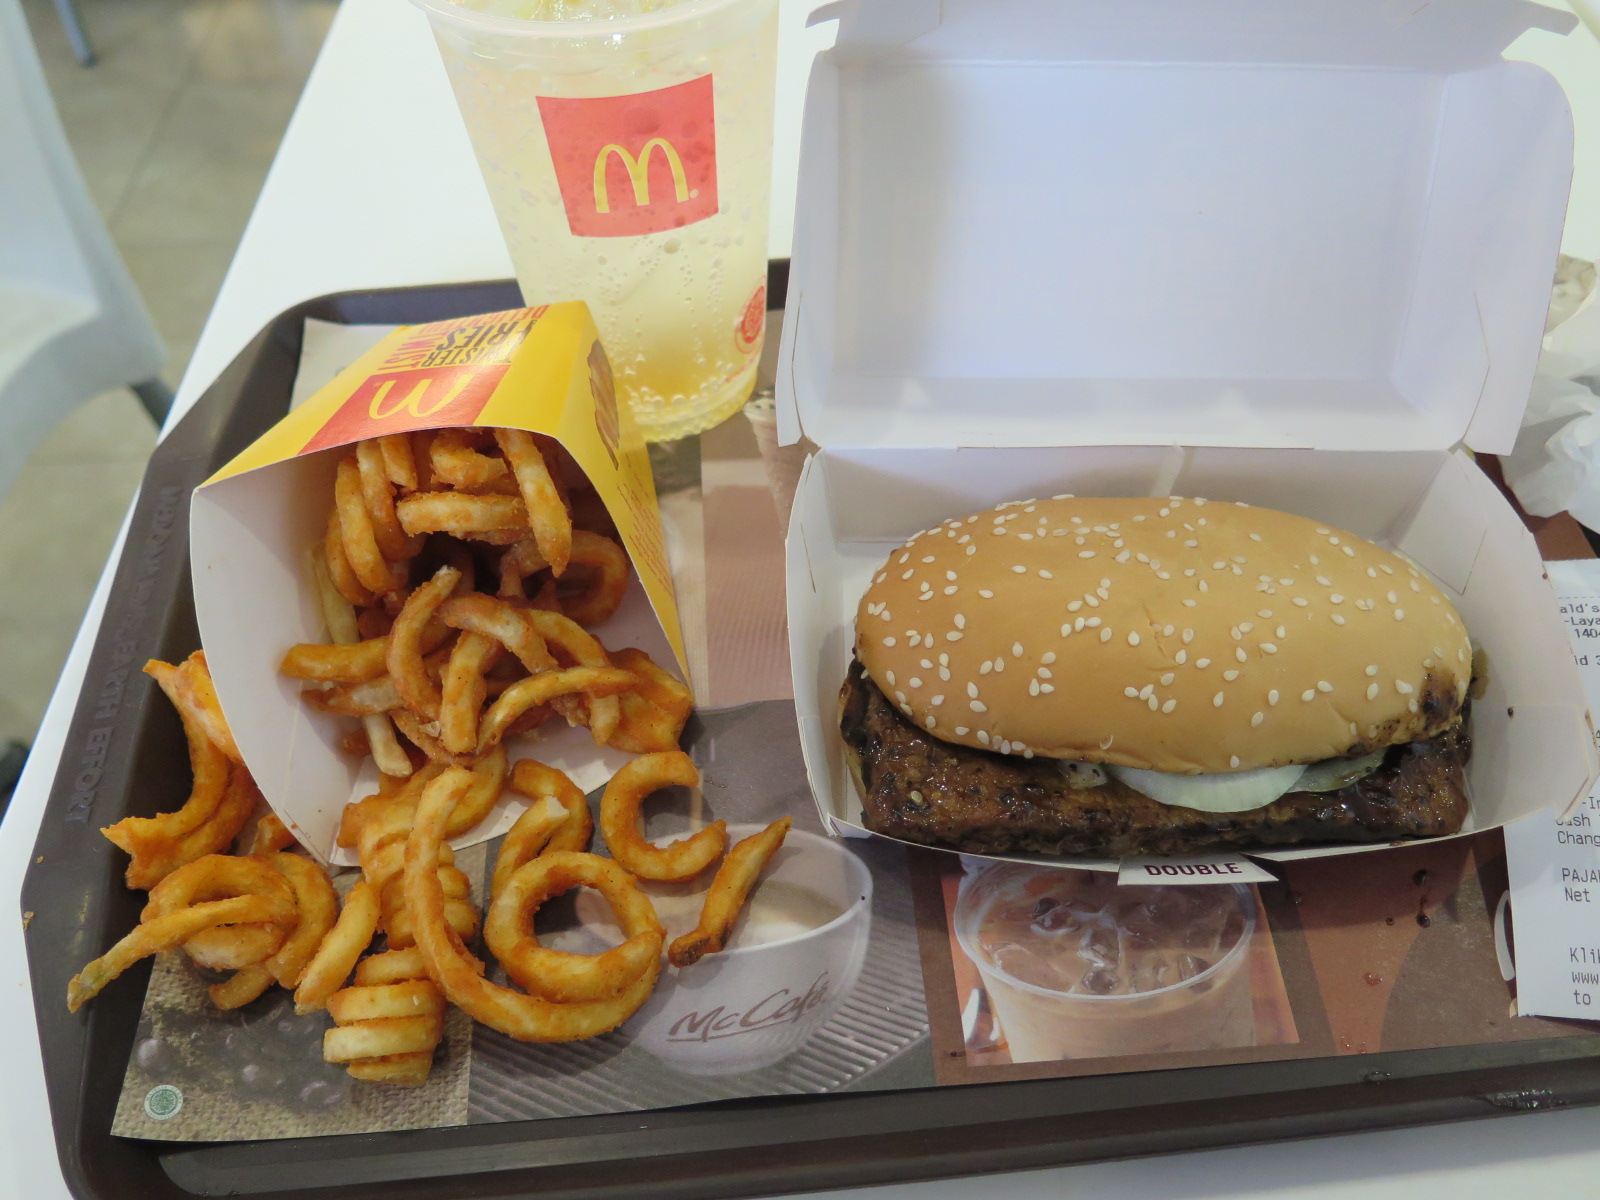 McDonalds in Bali beef prosperity burger